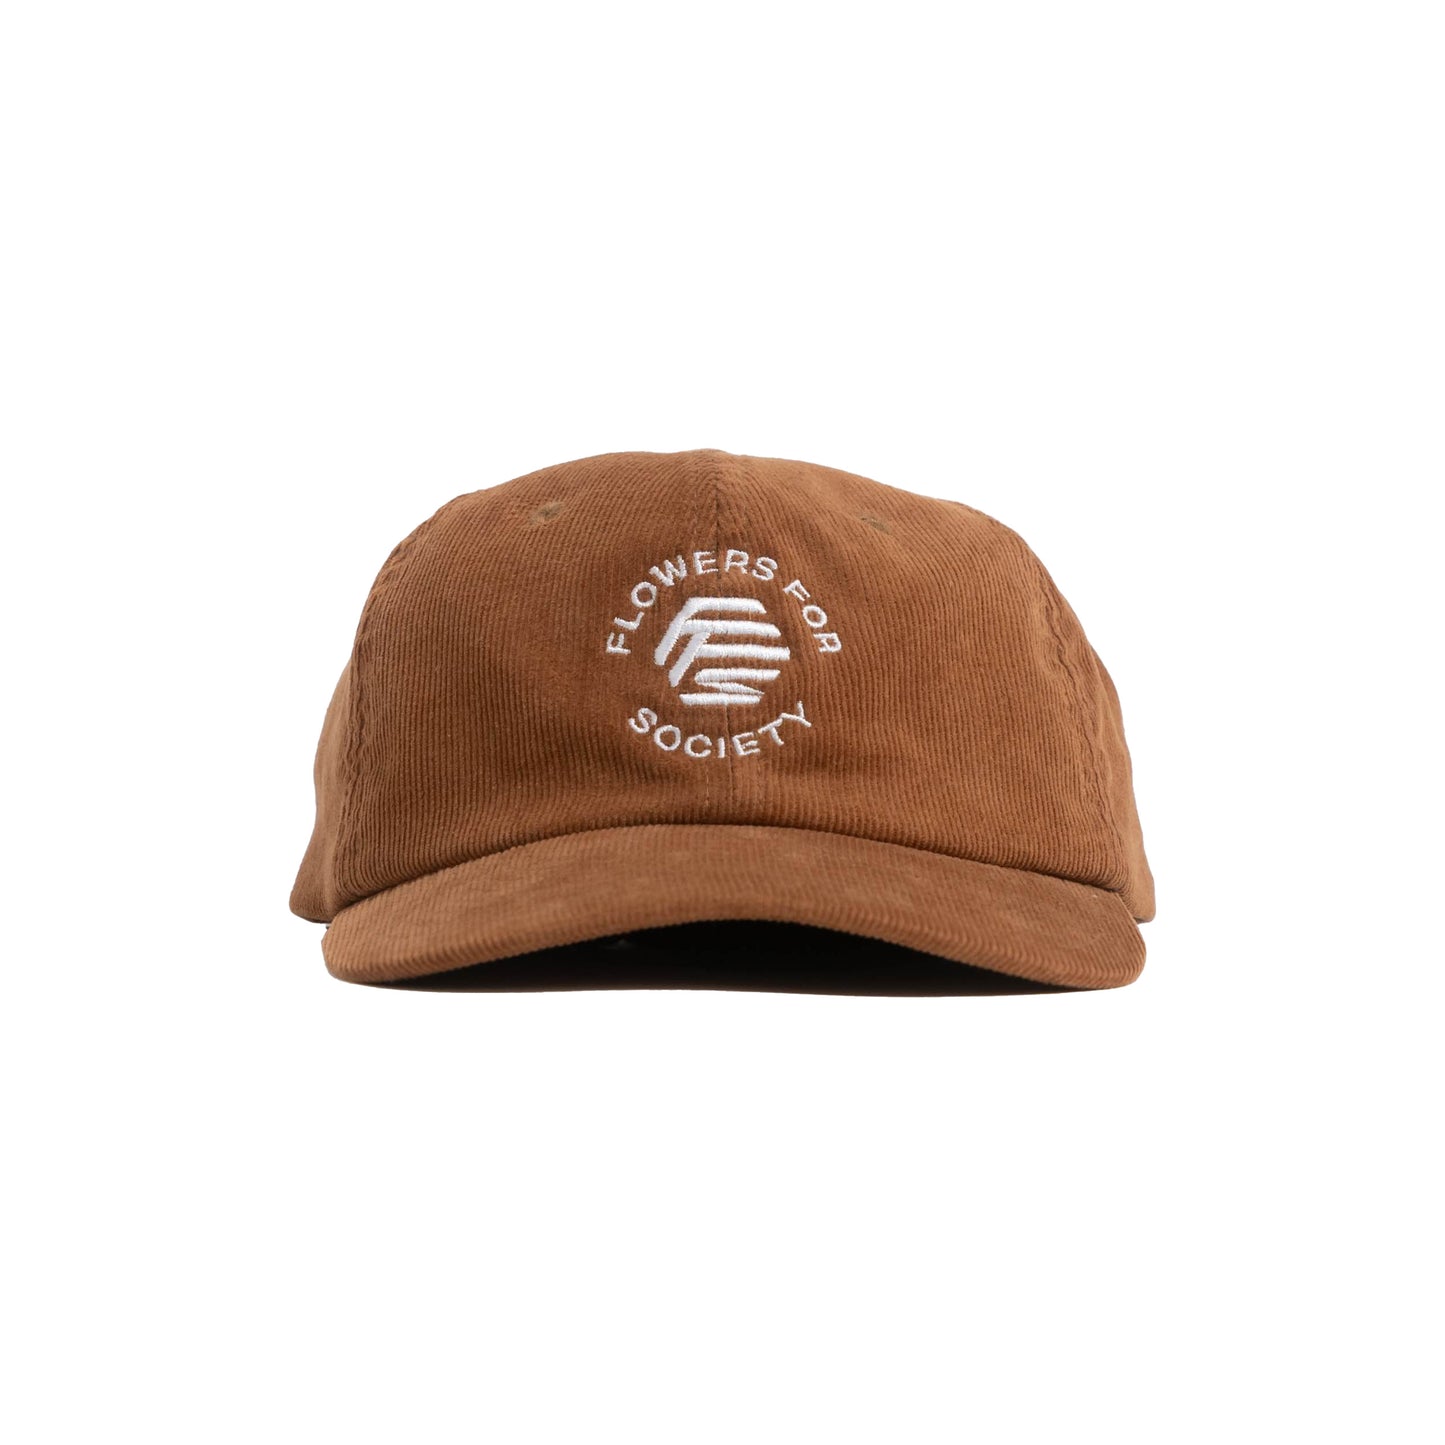 CORD CAP BROWN